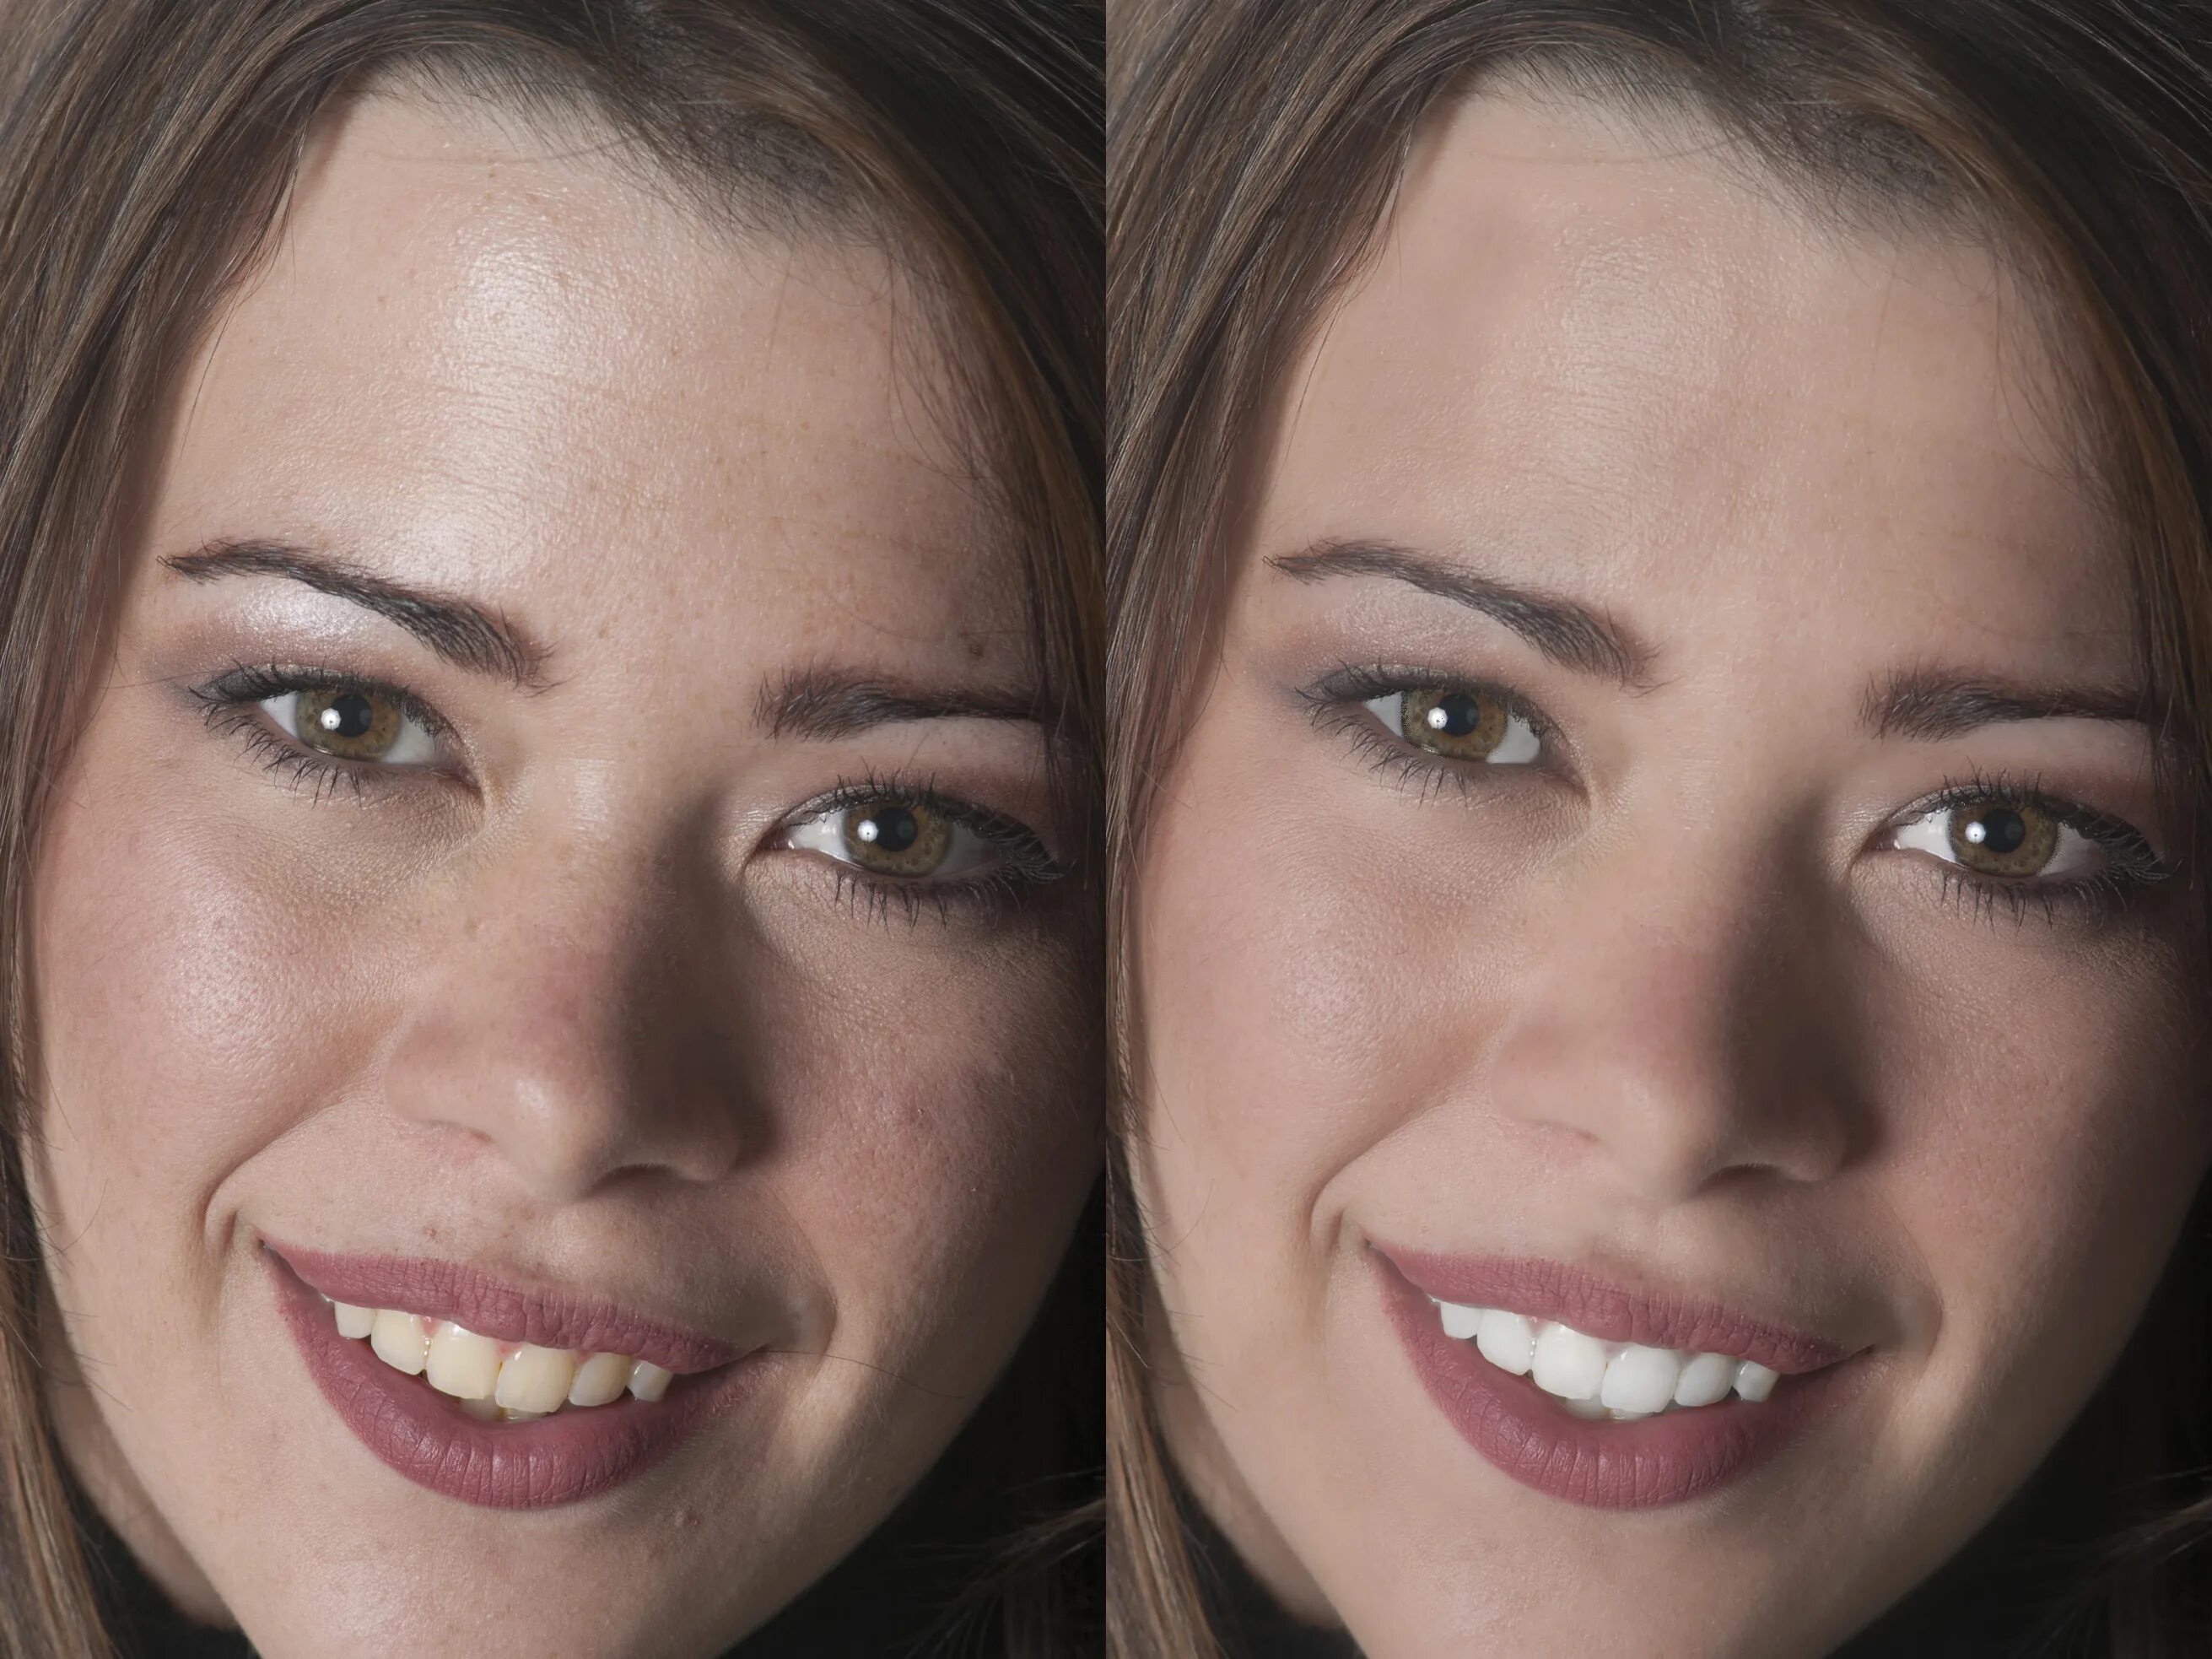 Effect quality. Лицо для редактирования. Улучшить лицо на фото. Ретушь до и после. Некачественное изображение.